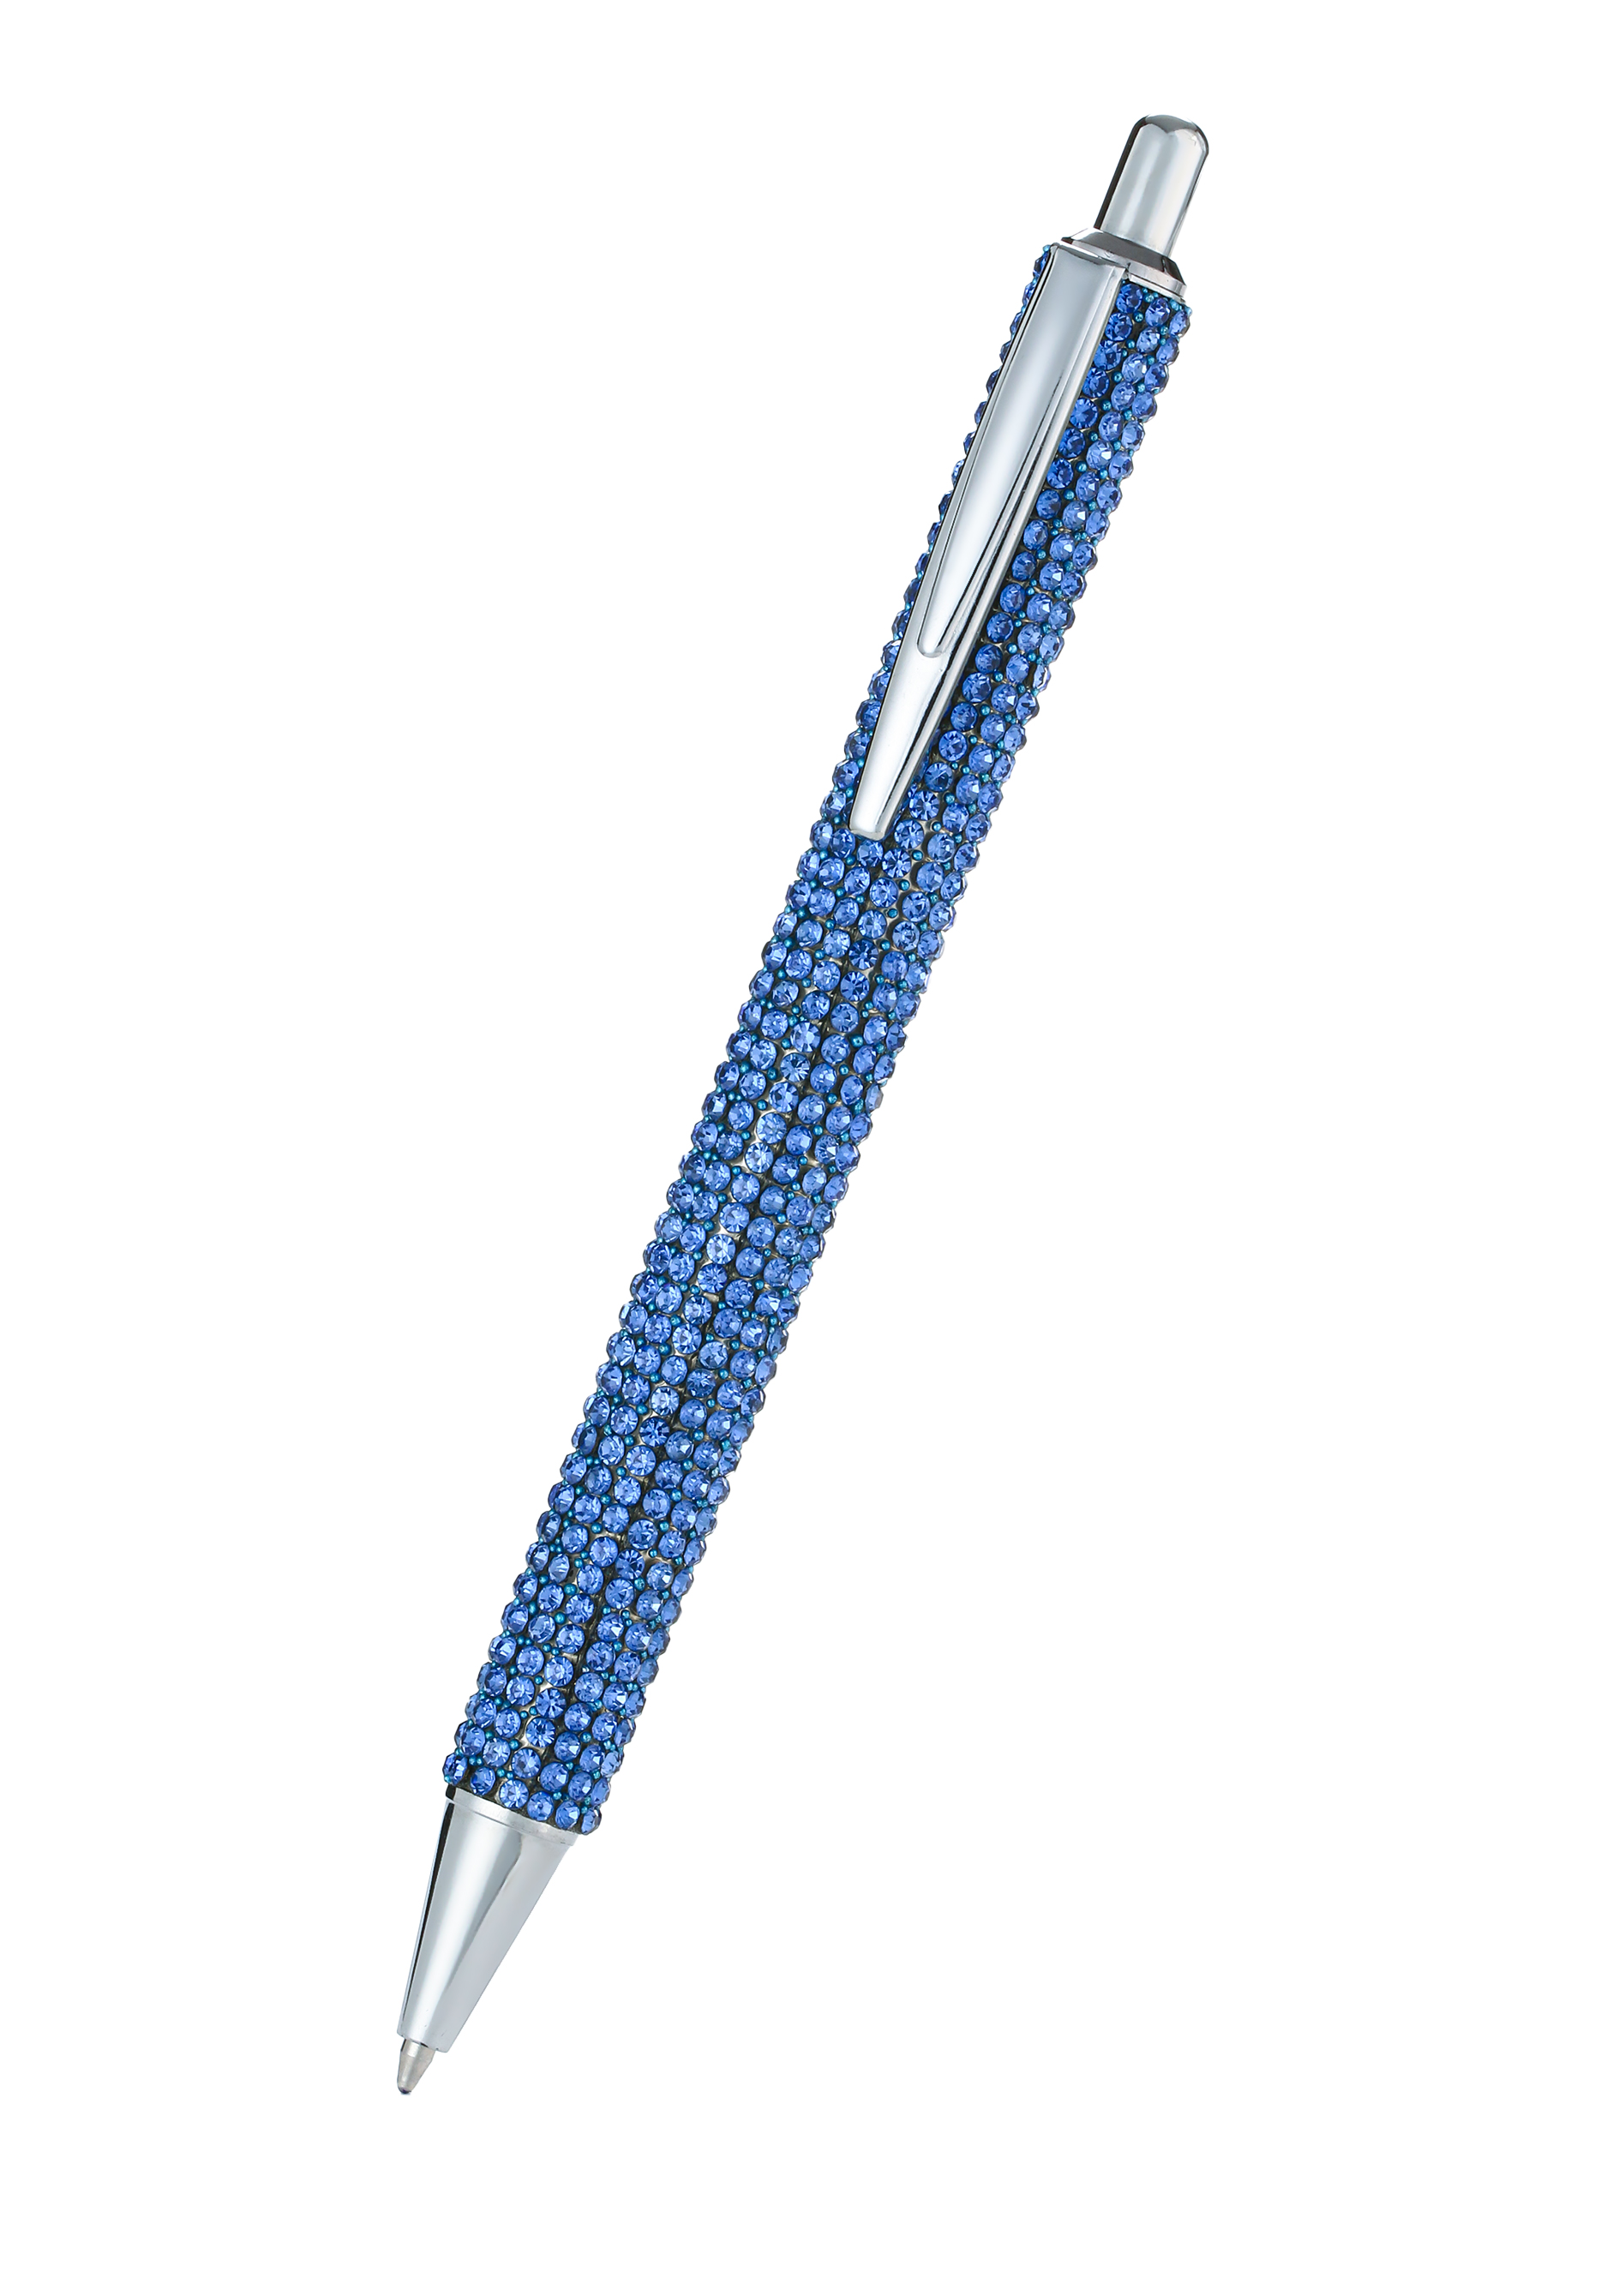 Ручка с кристаллами сажалка для луковичных растений длина 23 см деревянная ручка